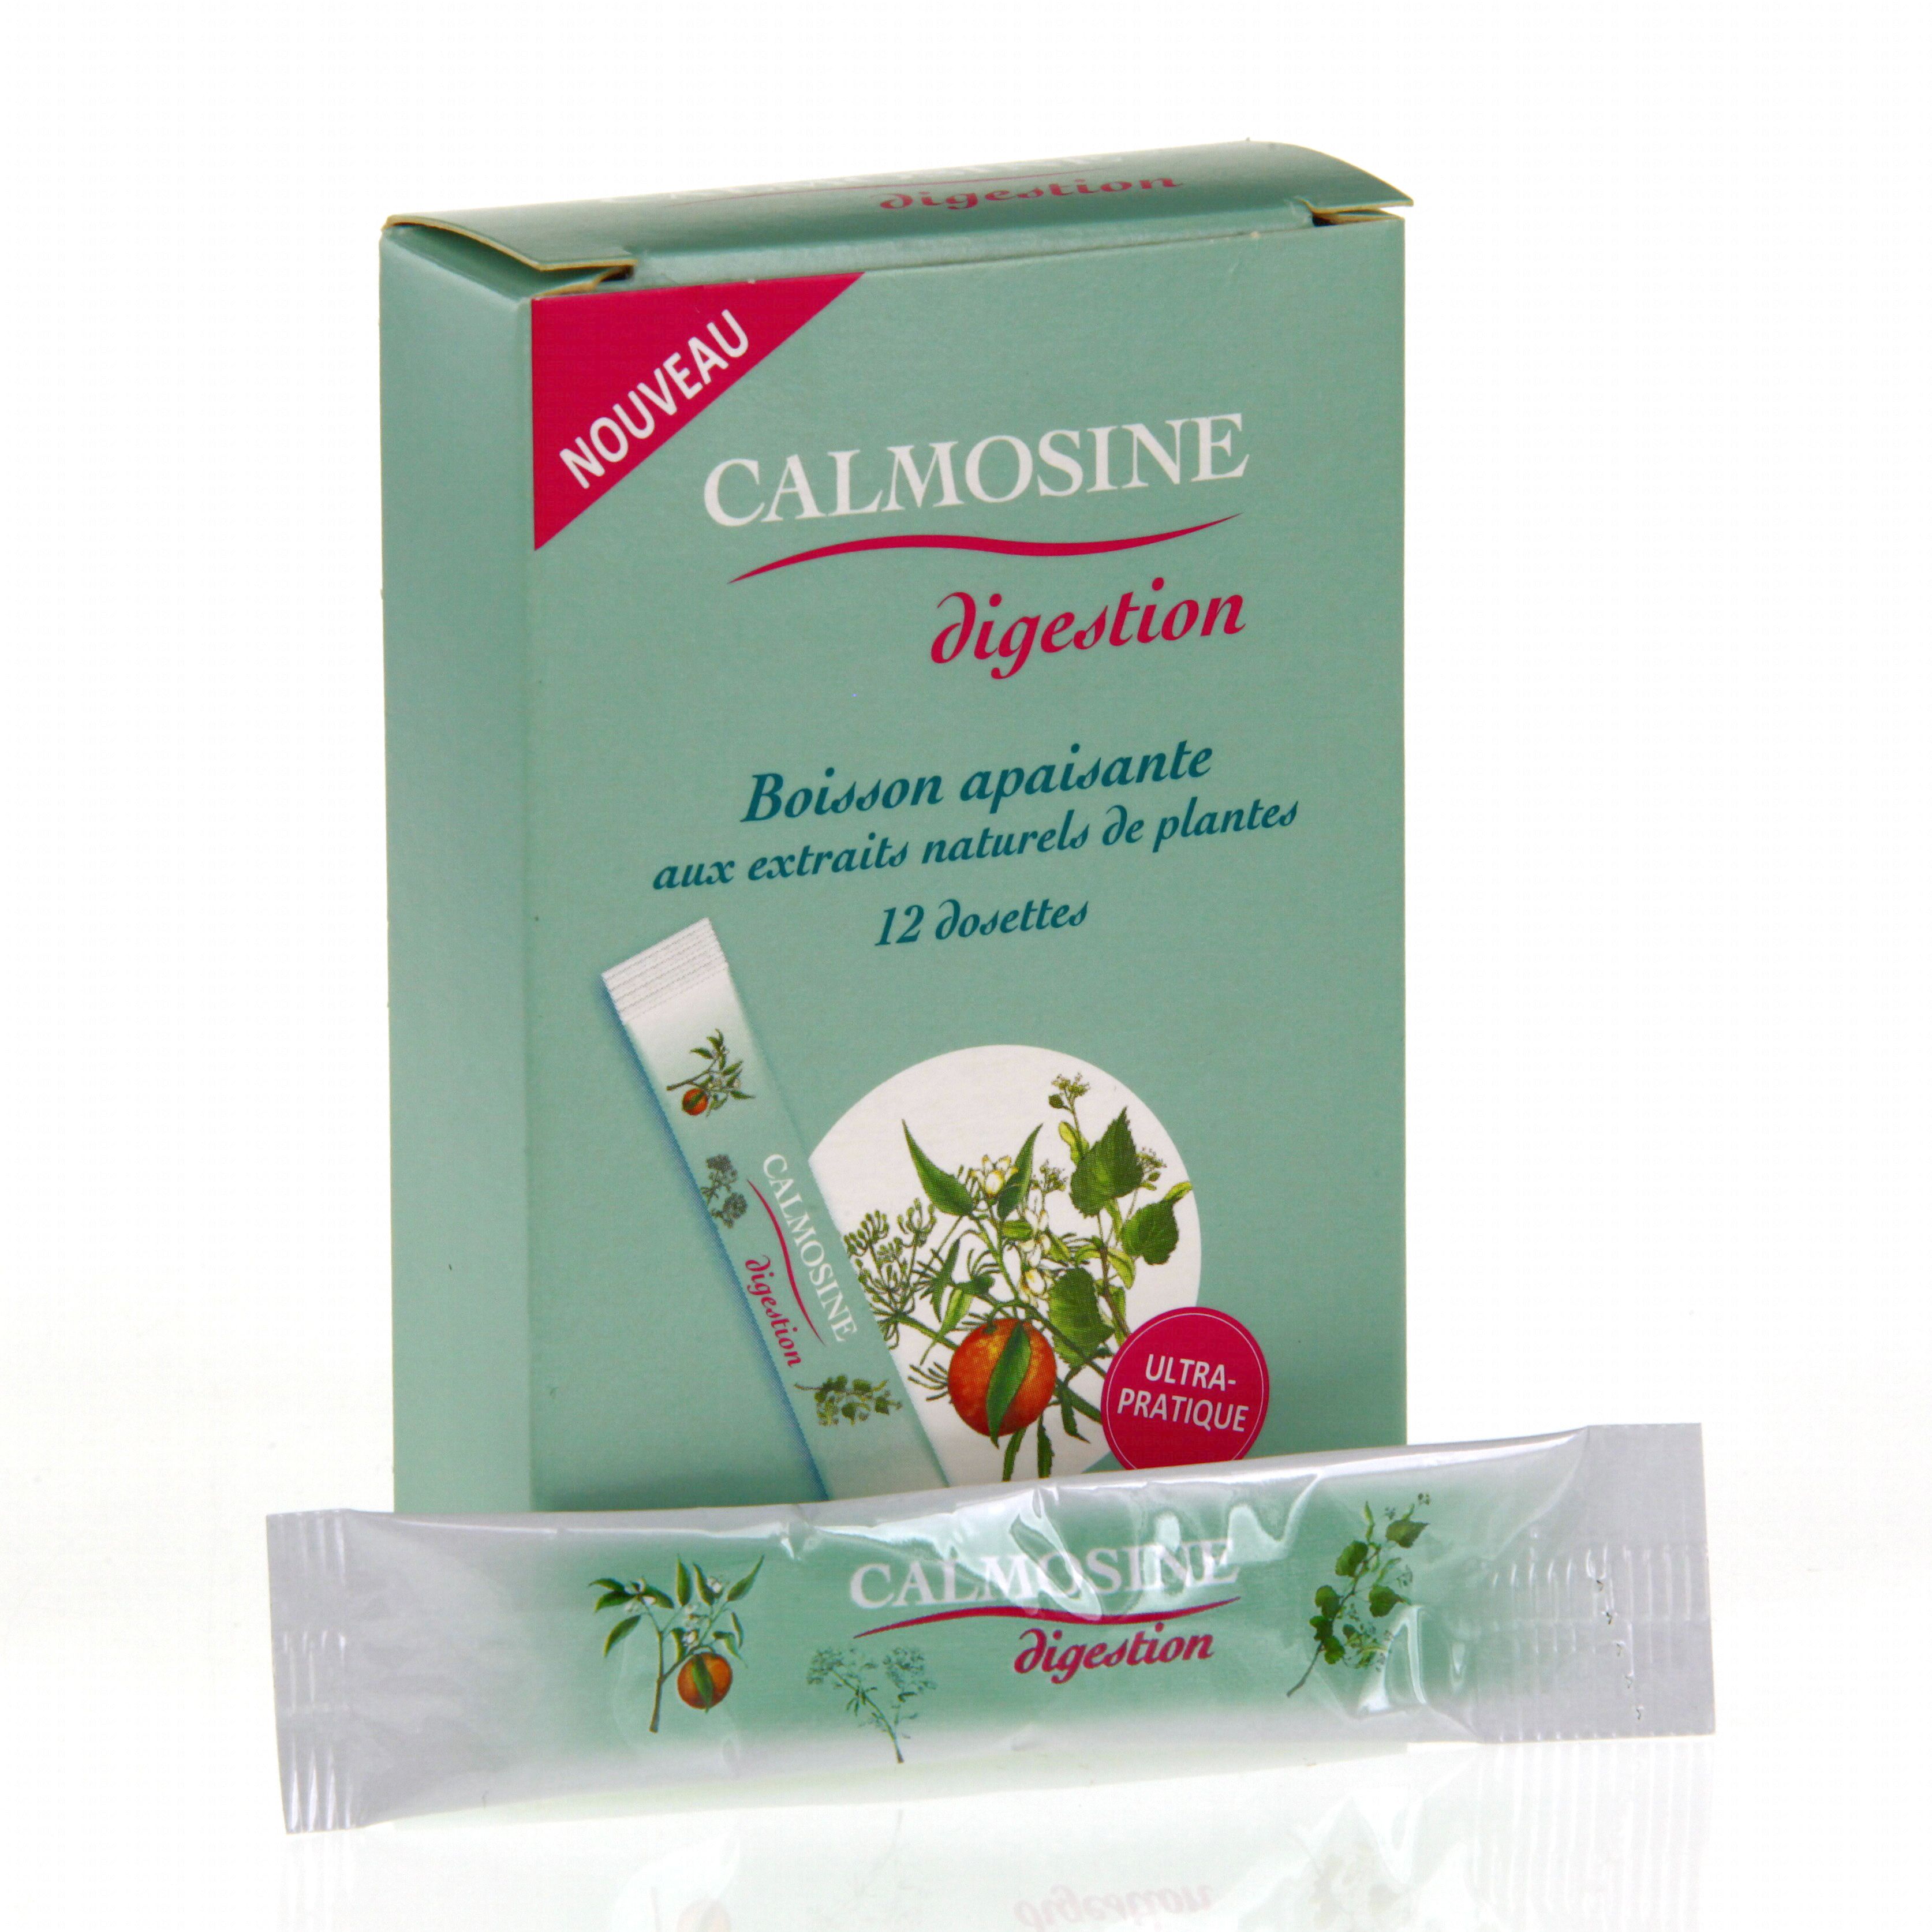 CALMOSINE Digestion boîte de 12 dosettes de 5ml - Pharmacie Prado Mermoz